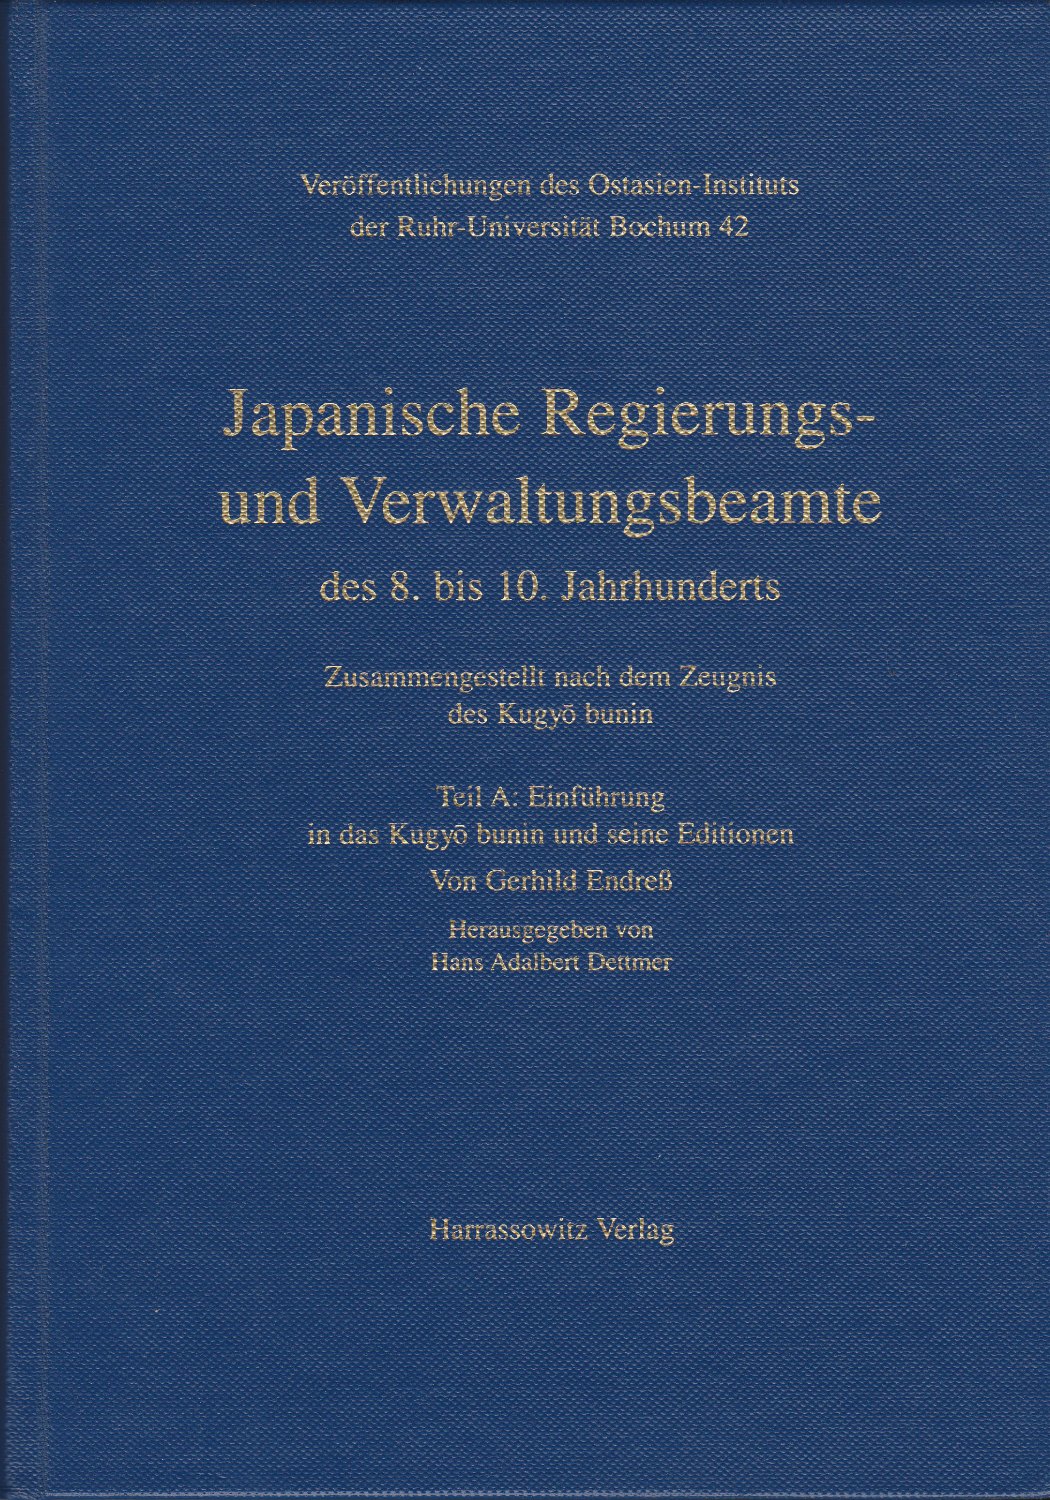 Japanische Regierungs- und Verwaltungsbeamte des 8. bis 10. Jahrhunderts : zusammengestellt nach dem Zeugnis des Kugyo bunin.  公卿補任